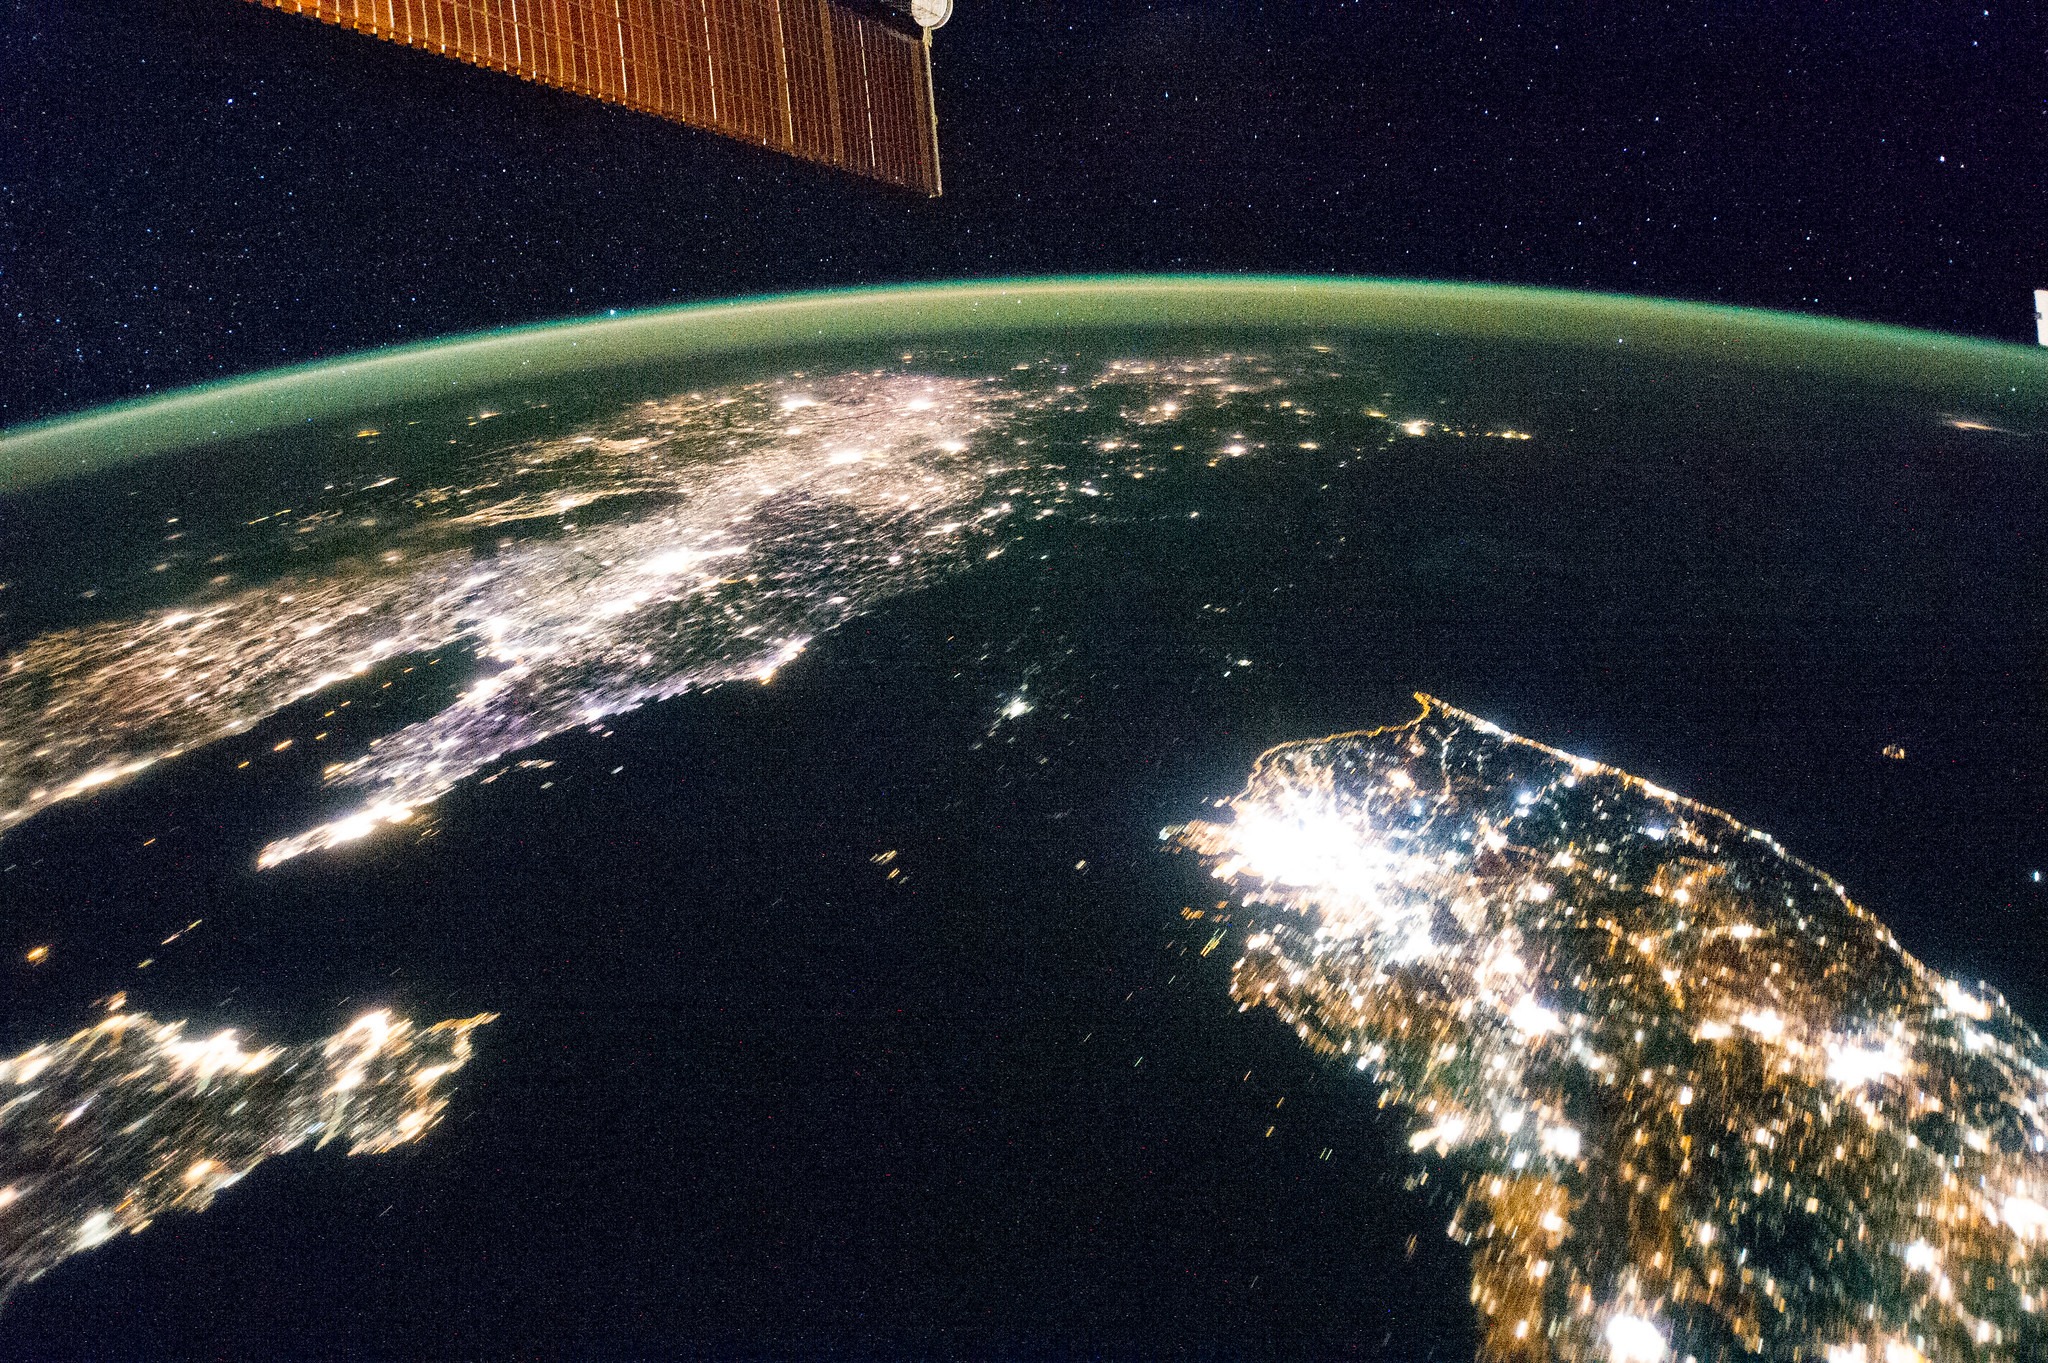 2023: Upcoming Crisis for China's Policy Toward the Korean Peninsula